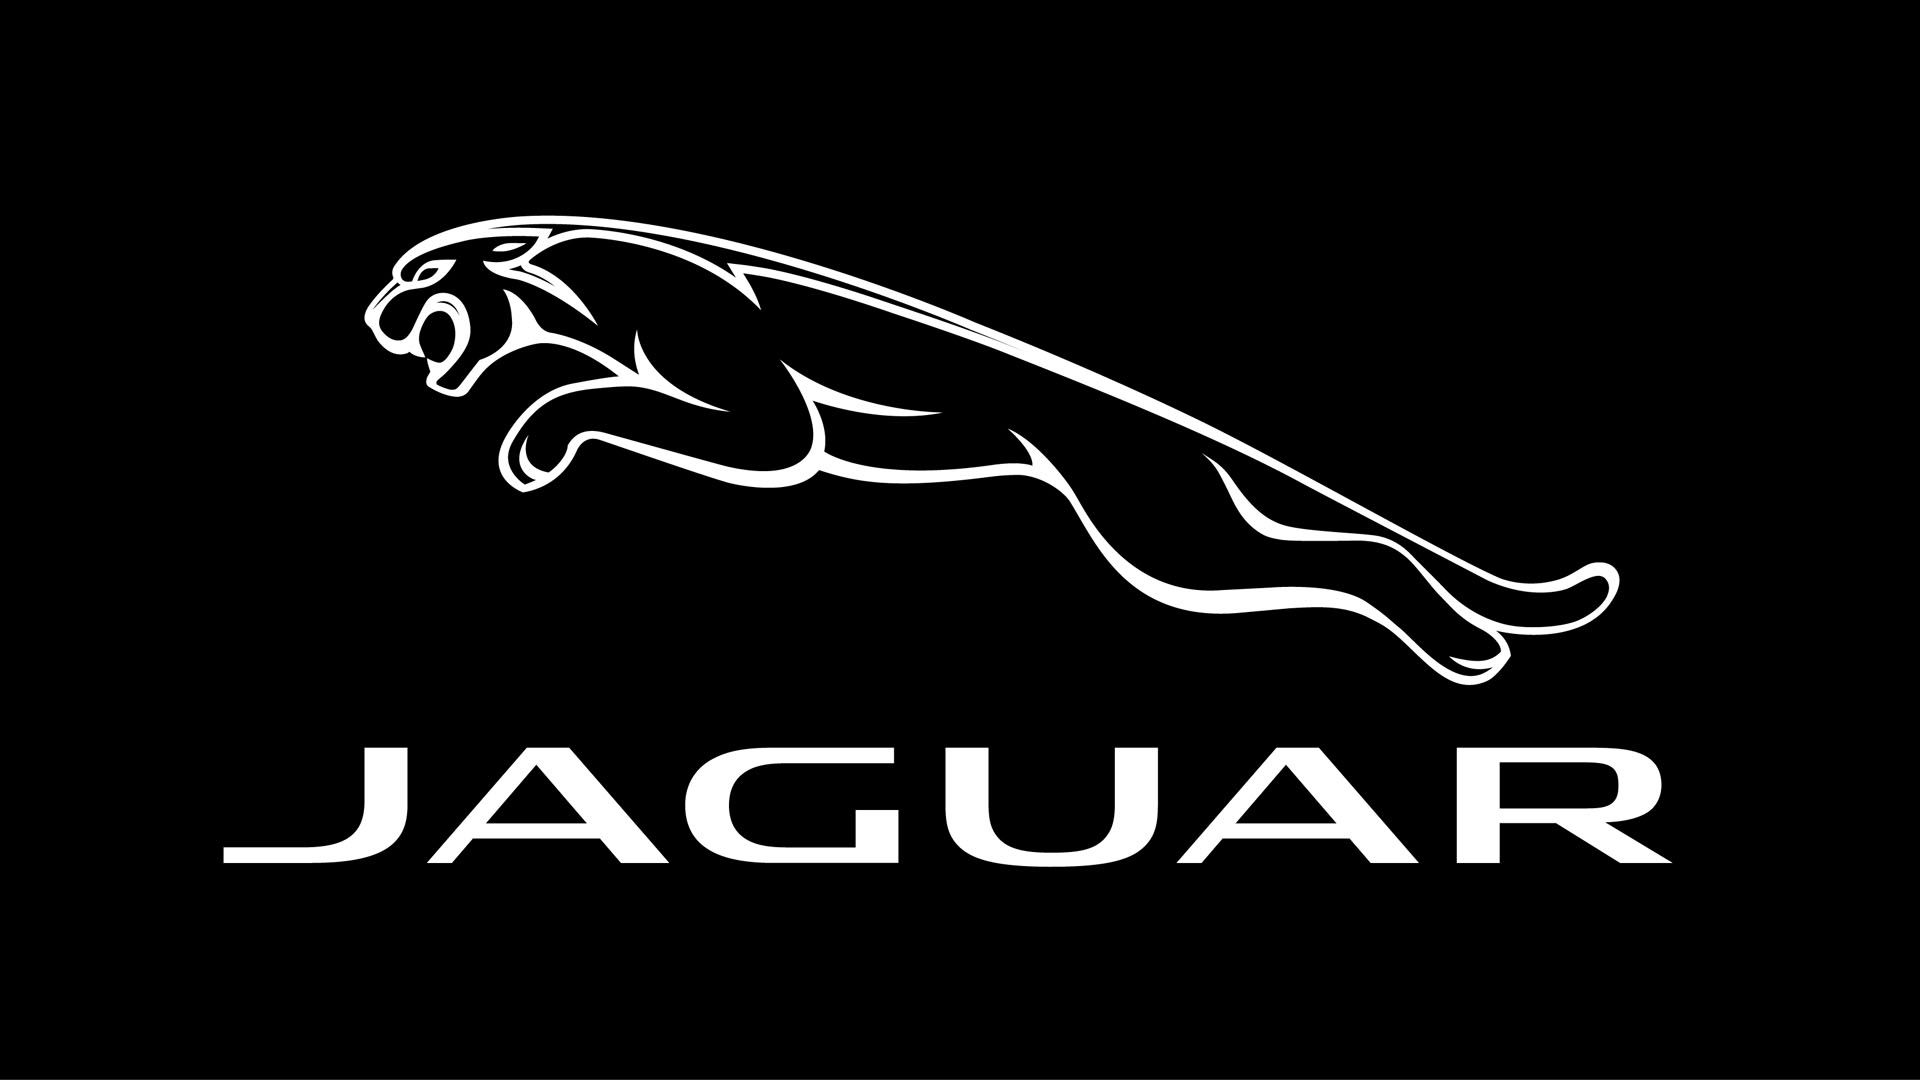 jaguar car logo hd wallpaper,logo,font,brand,graphics,jaguar